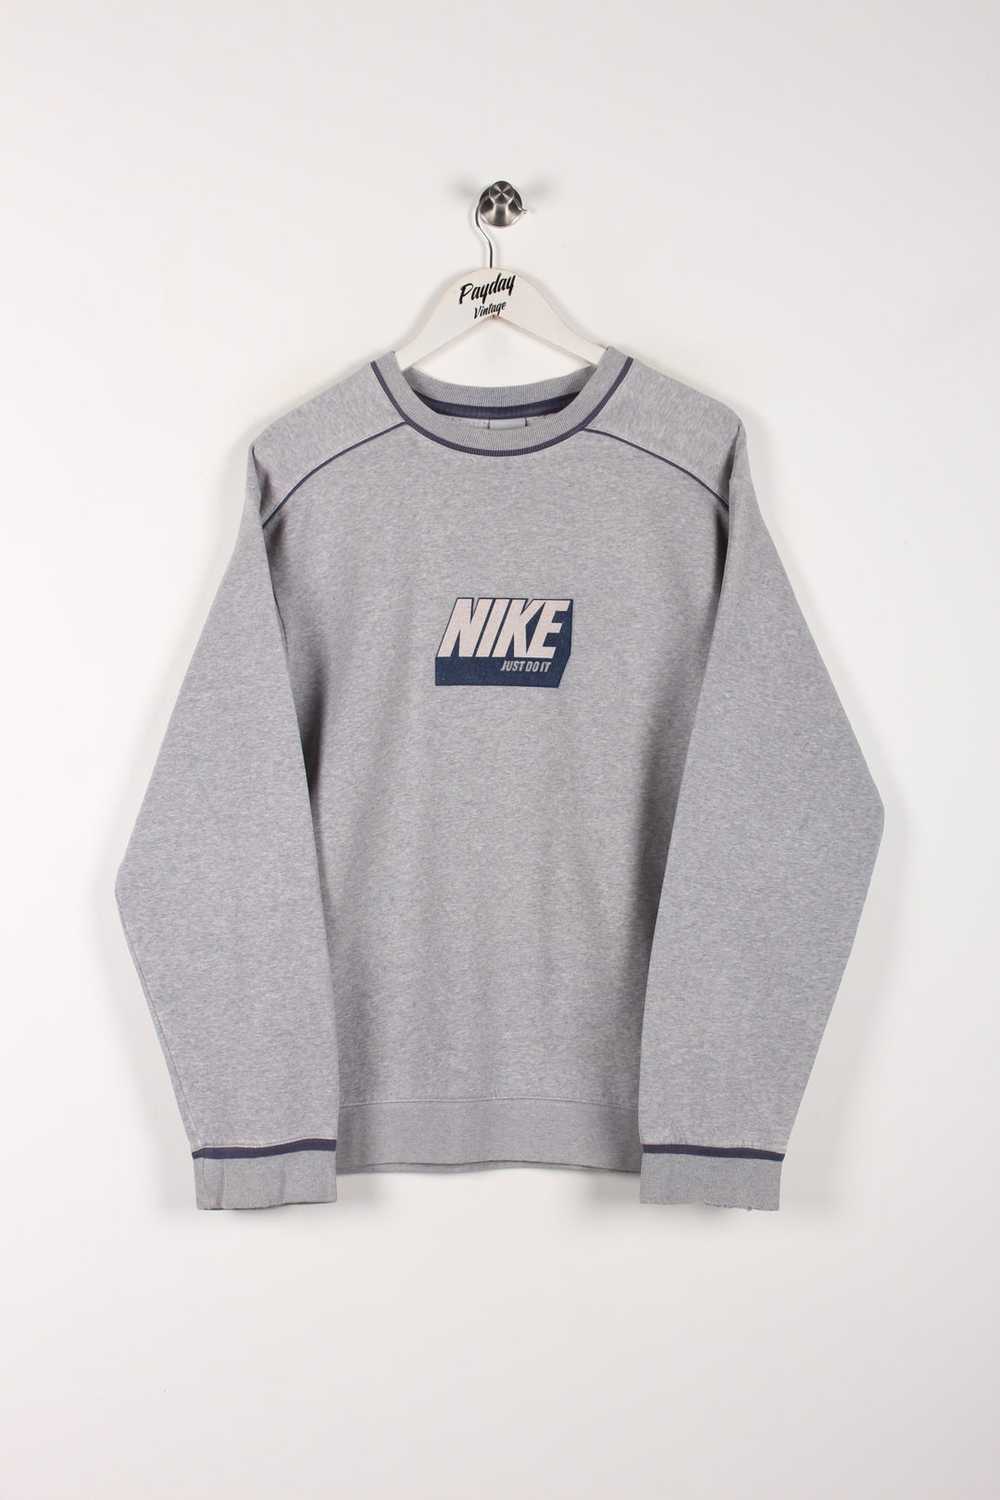 00's Nike Sweatshirt Large - image 1